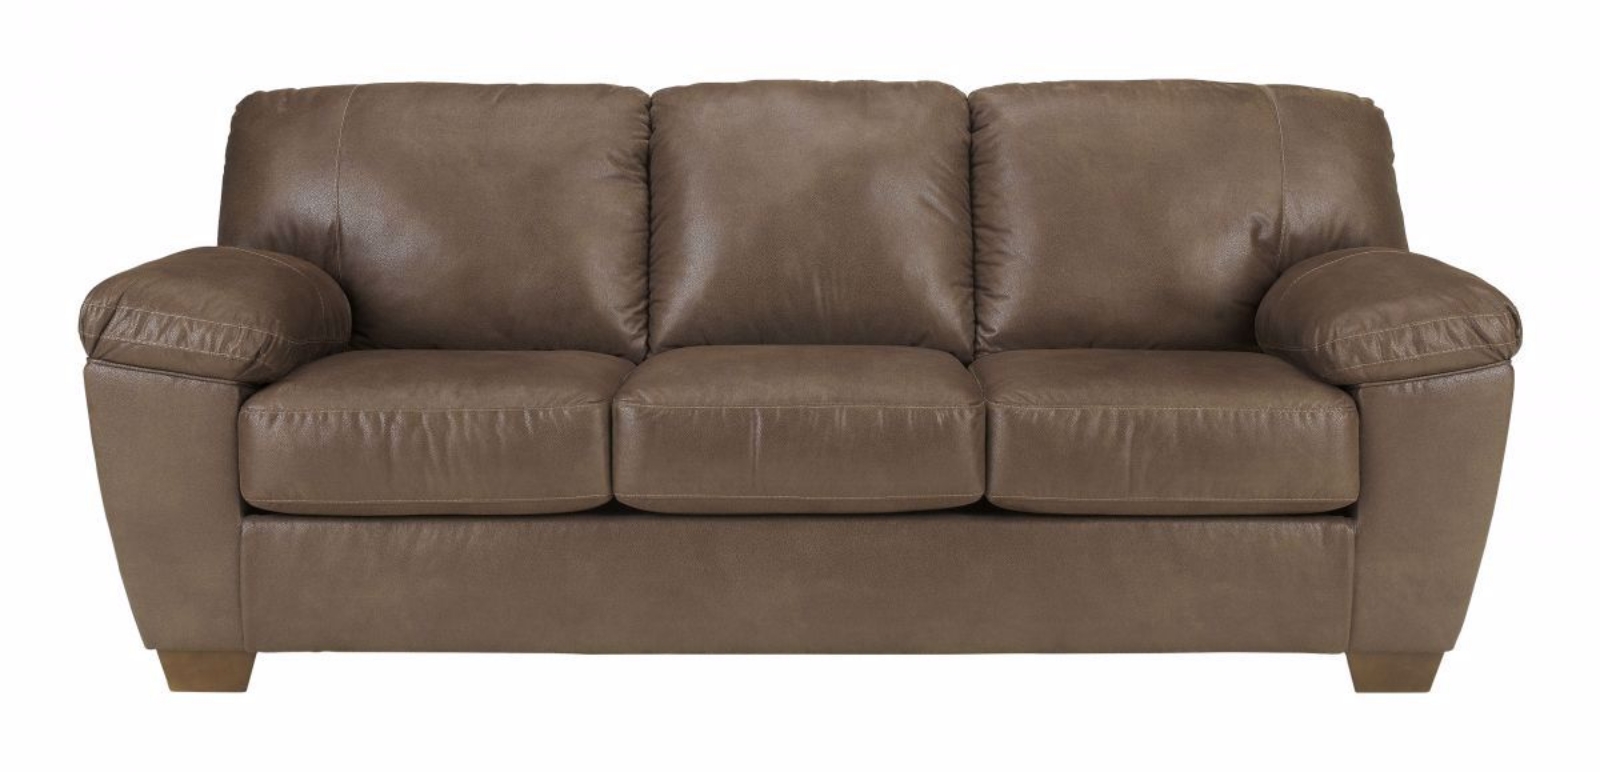 Picture of Amazon Sofa